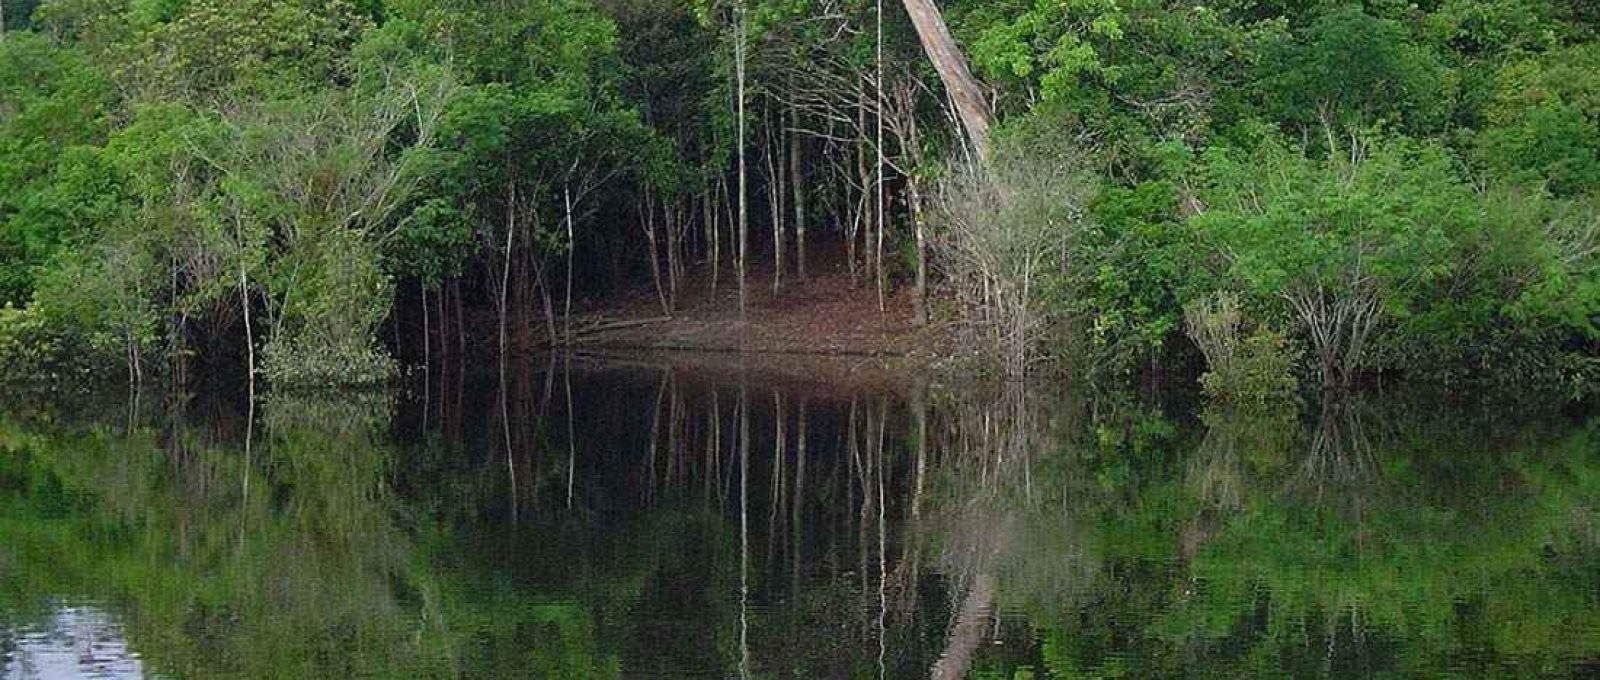 Área inundada da floresta amazônica, 14 de julho de 2005 (James Martins/Wikimedia Commons/CC BY 3.0).